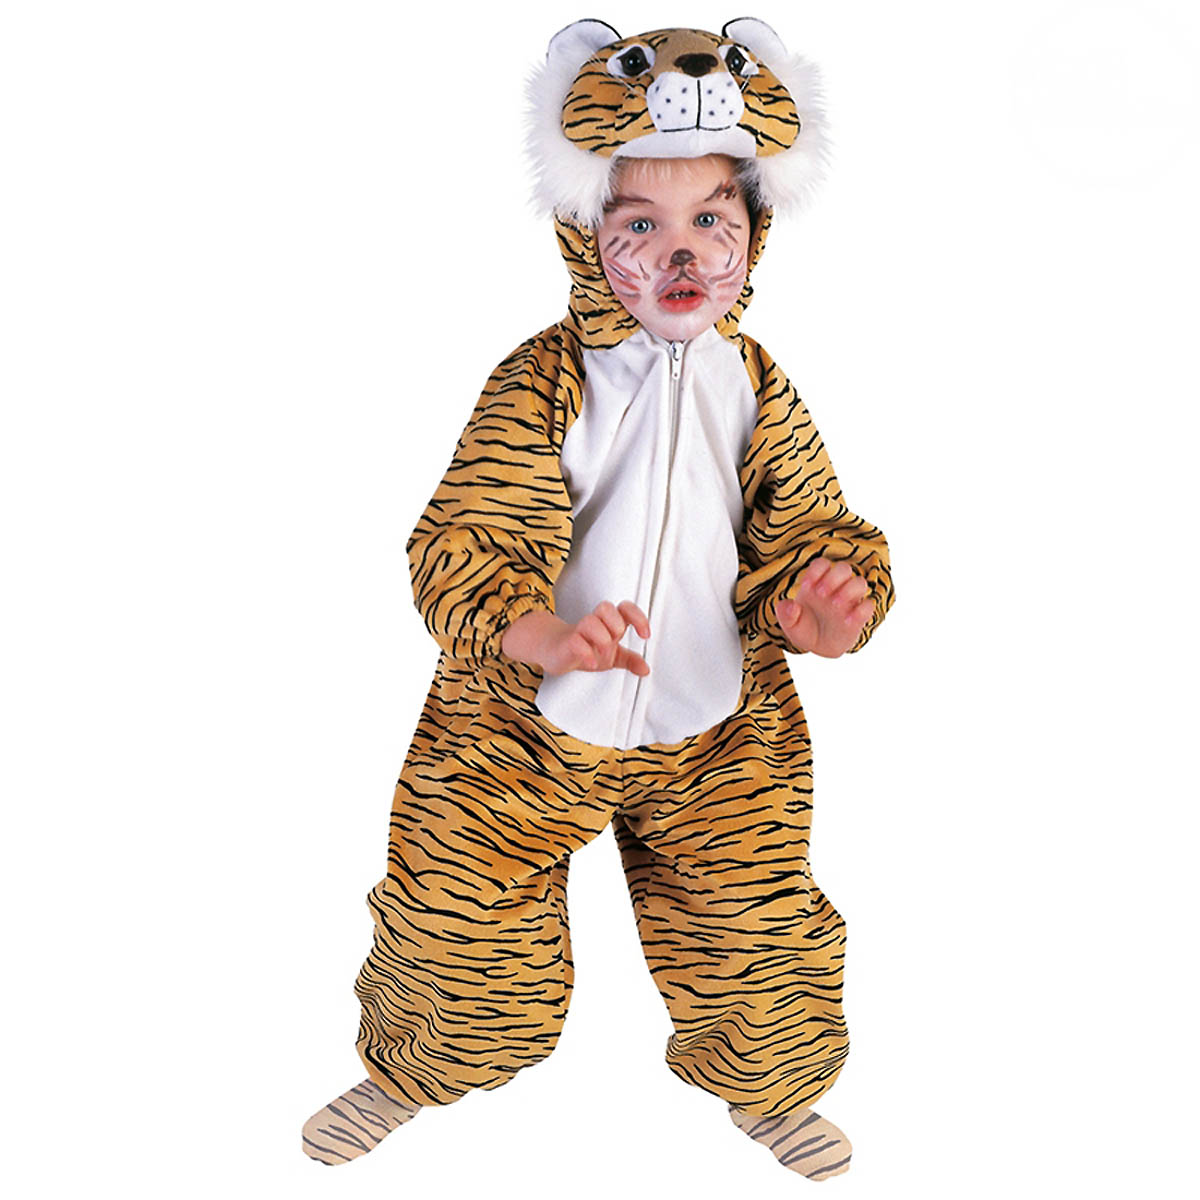 TIGER PLÜSCHKOSTÜM Karneval Kinder Plüsch Kostüm Tier Verkleidung 110/116 98113 